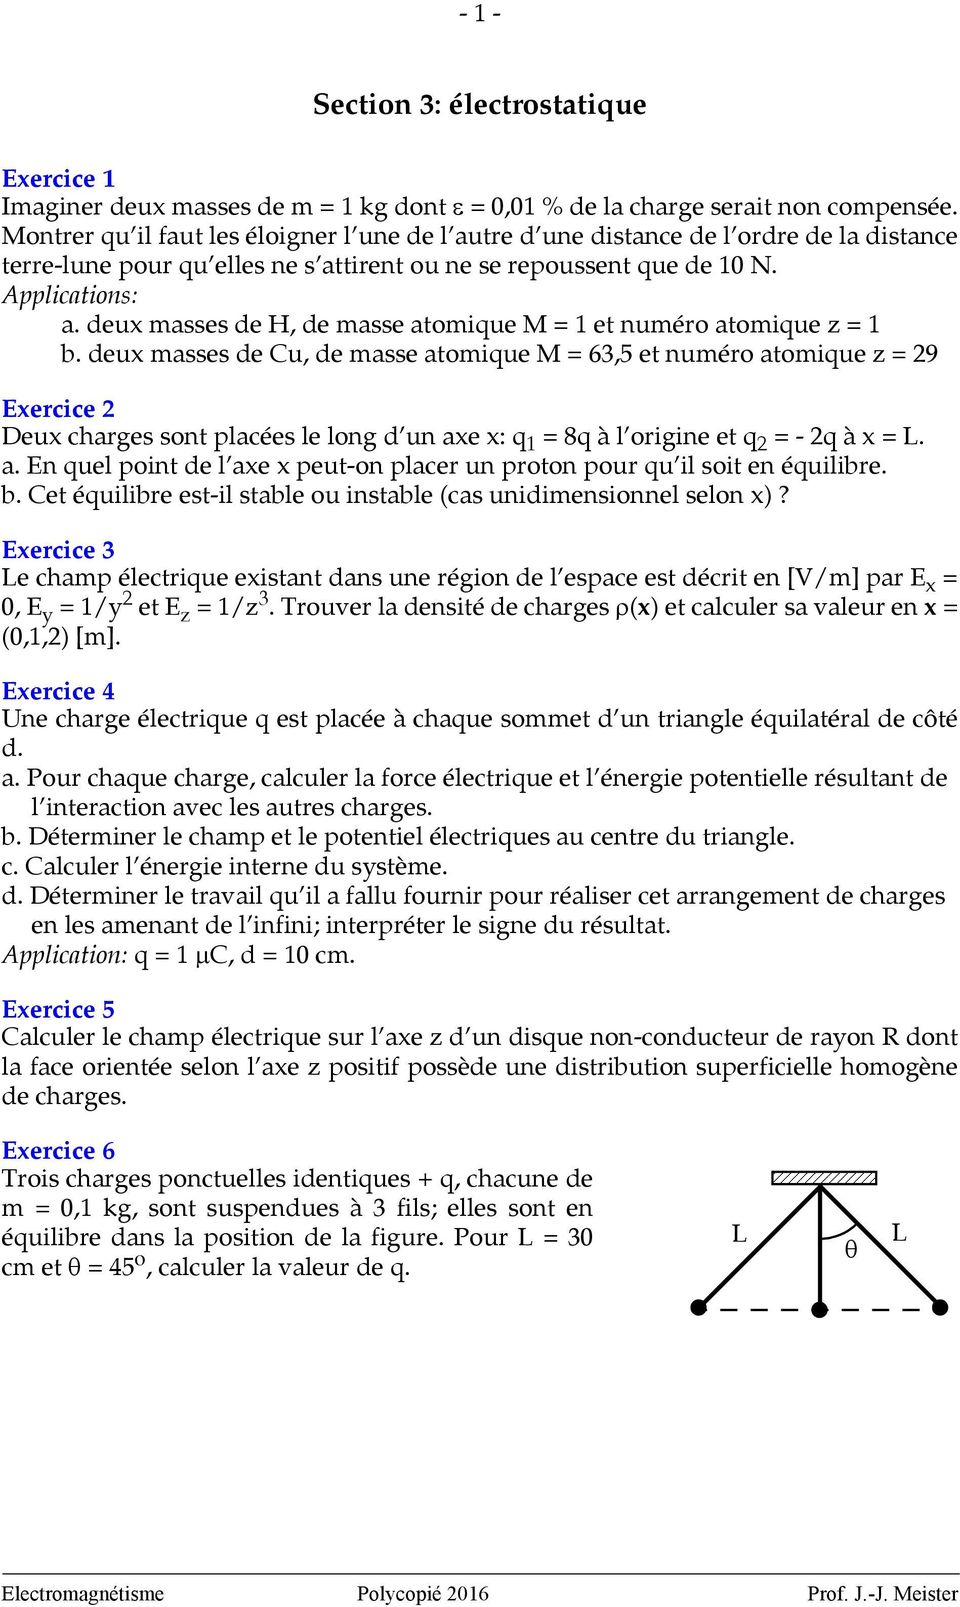 Section 3: électrostatique - PDF Téléchargement Gratuit